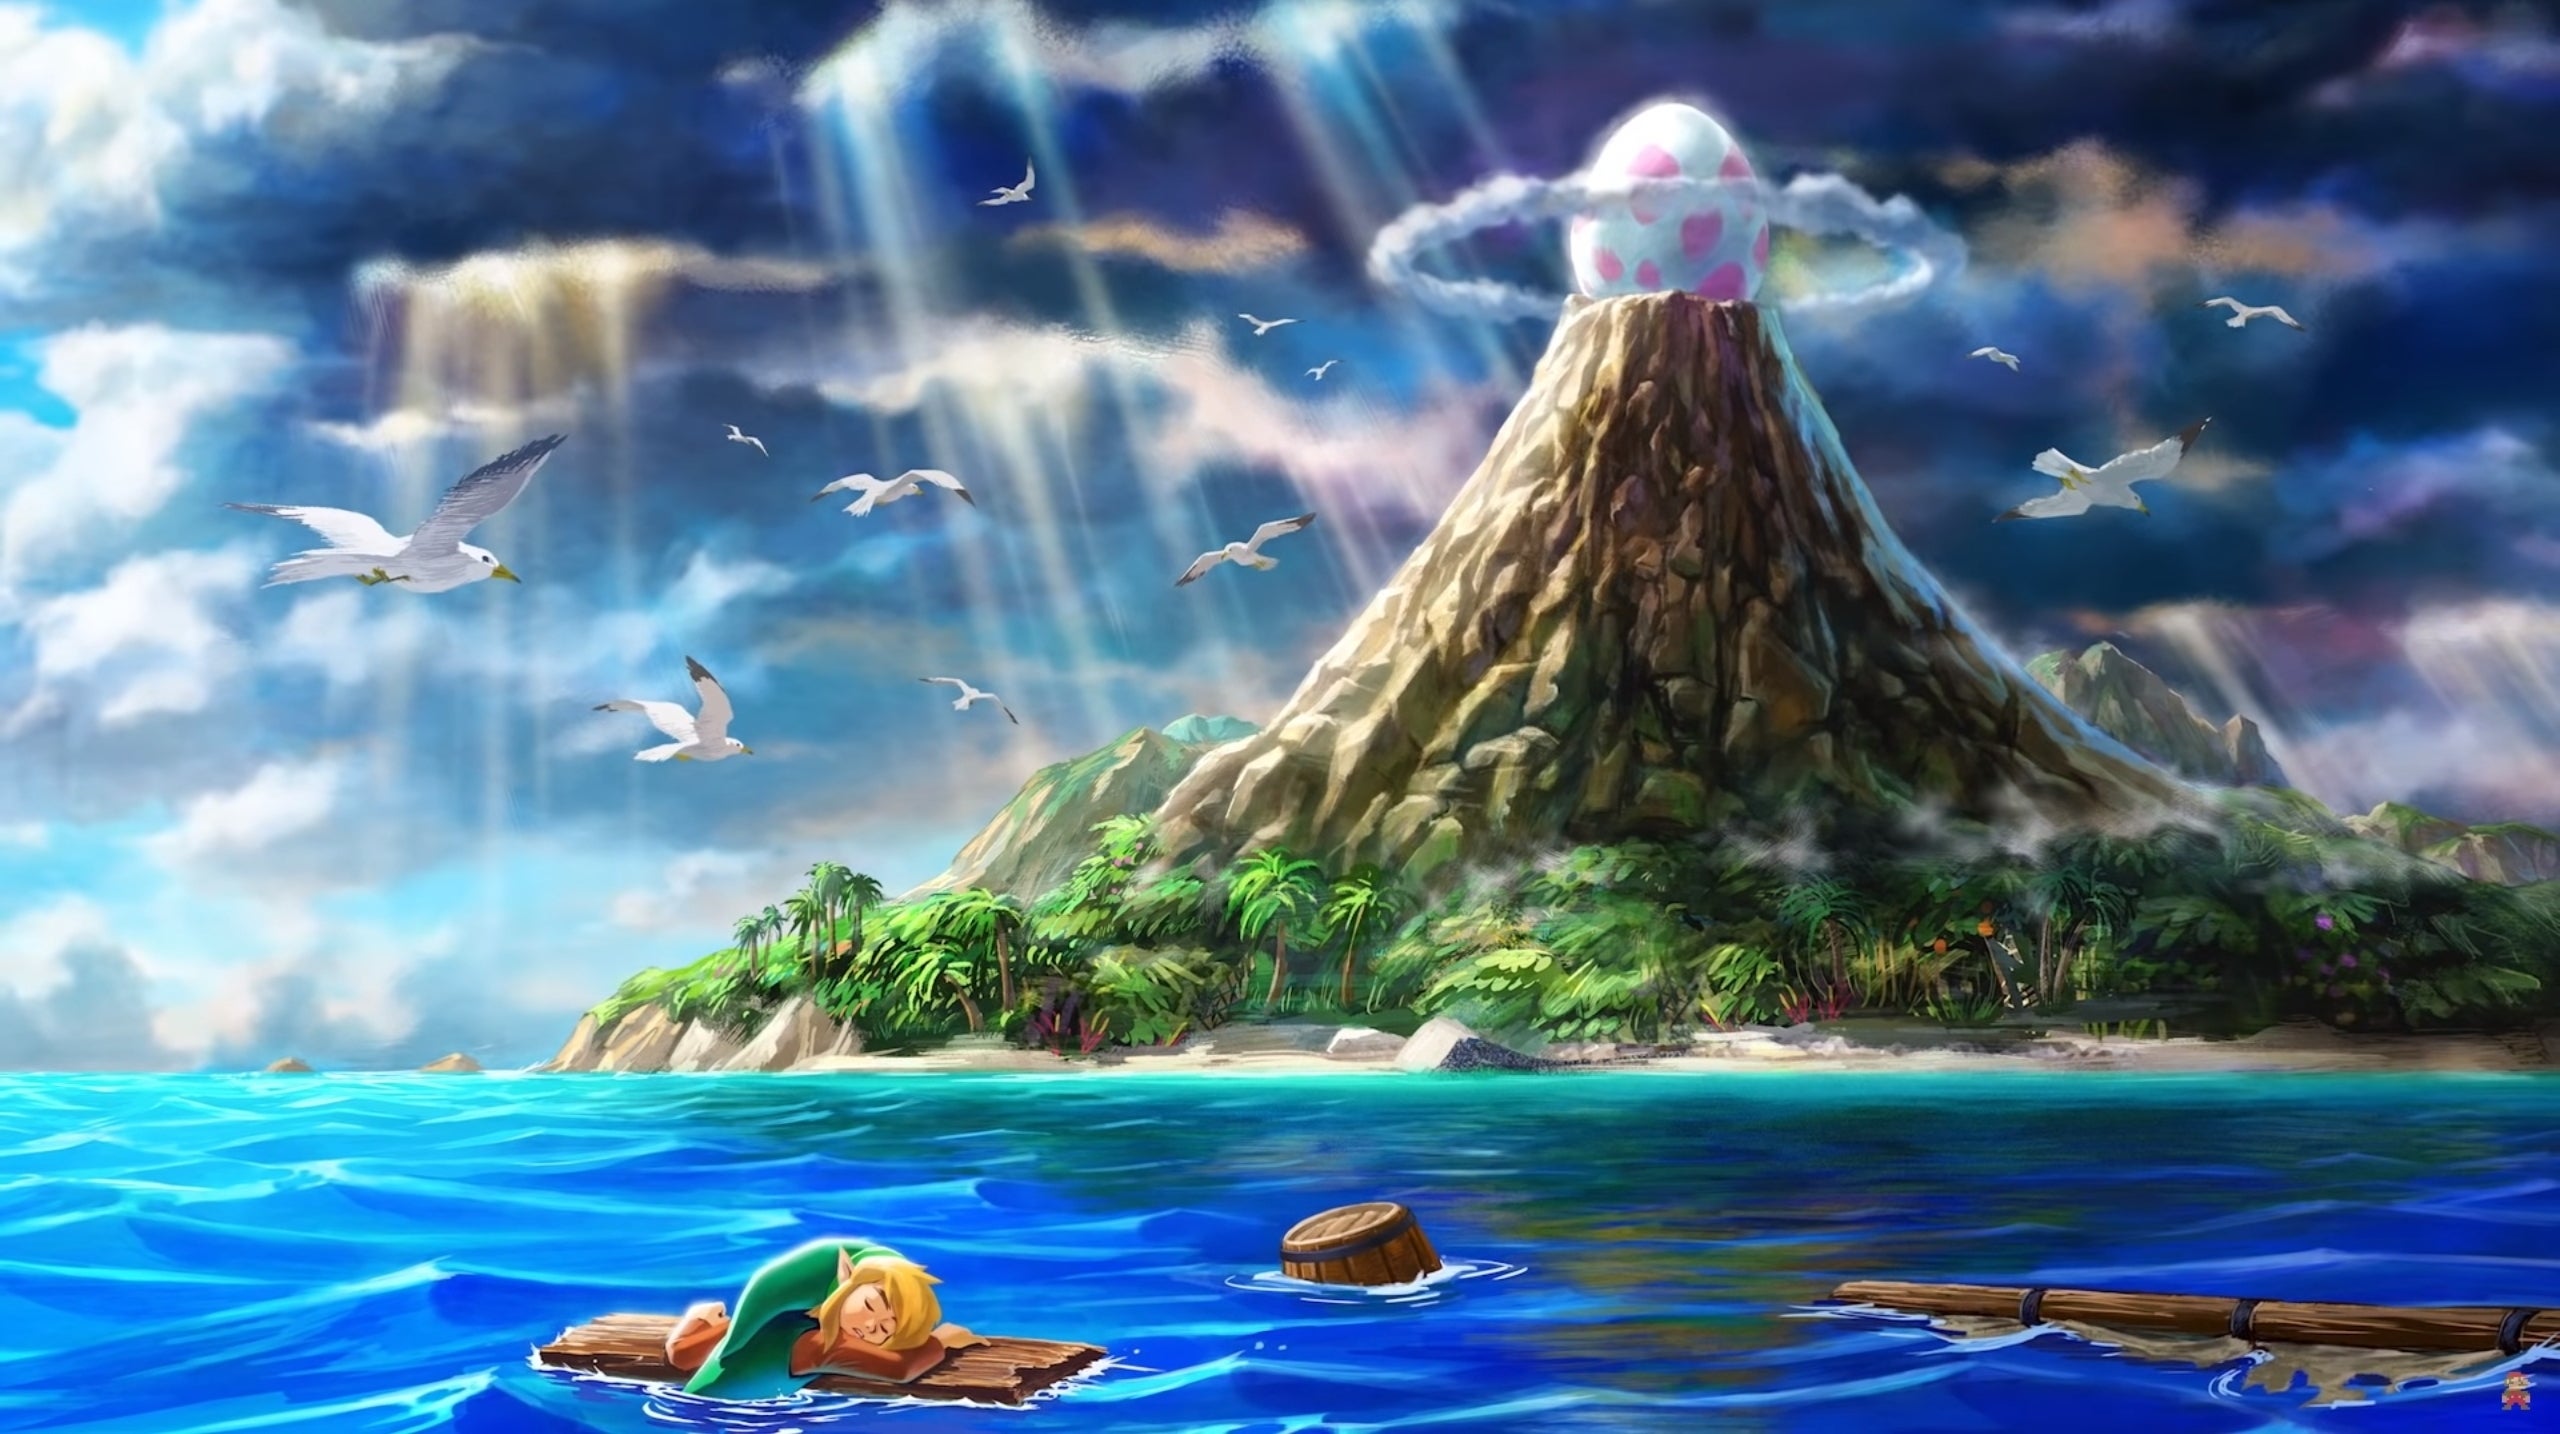 Bilder zu Warten auf Zelda: Link's Awakening, die erste: Spielt mal wieder A Link Between Worlds!